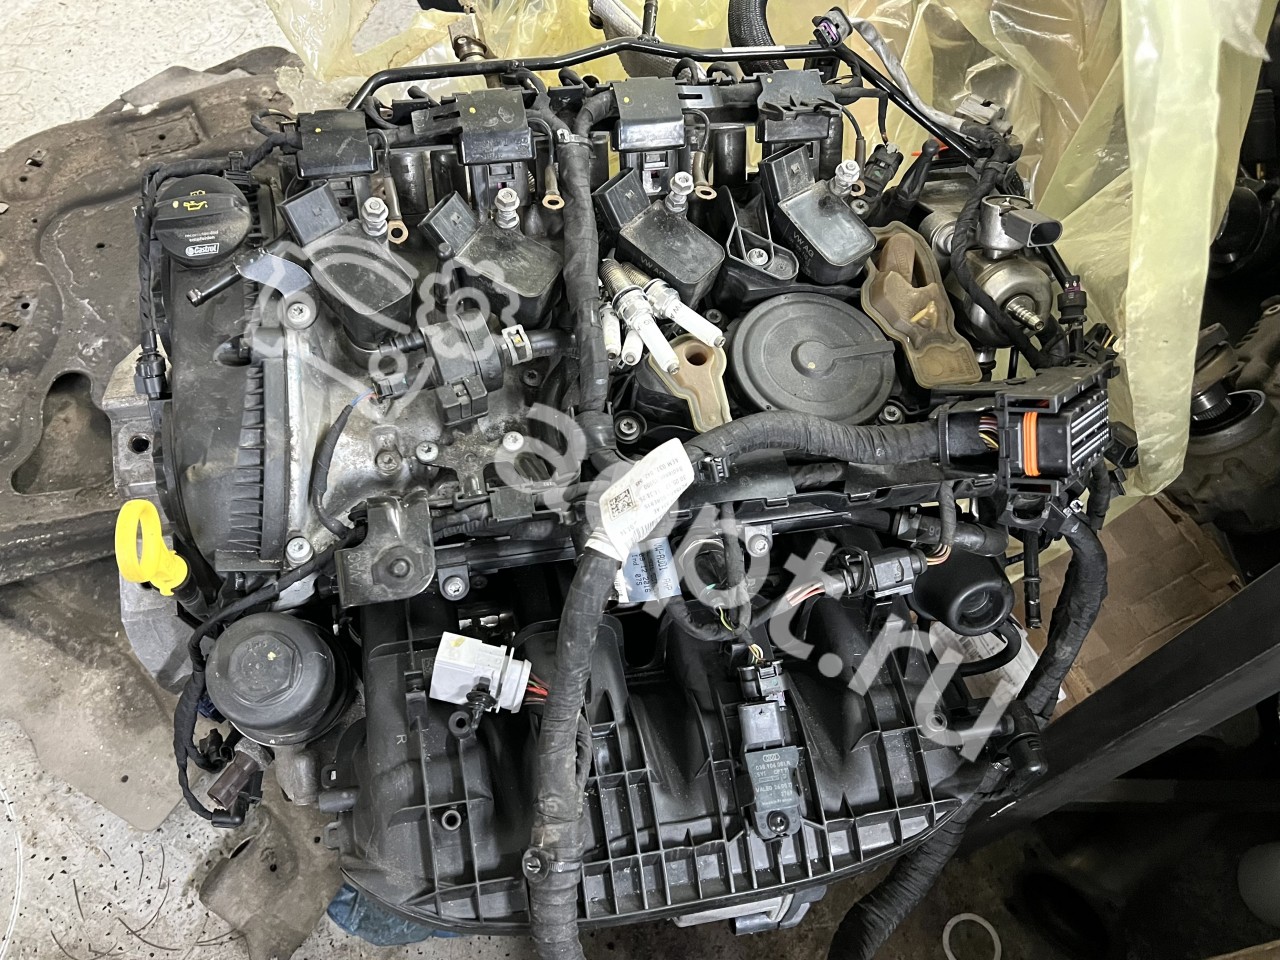 Двигатель 1.8 TSI на Volkswagen и Skoda – что нужно знать?